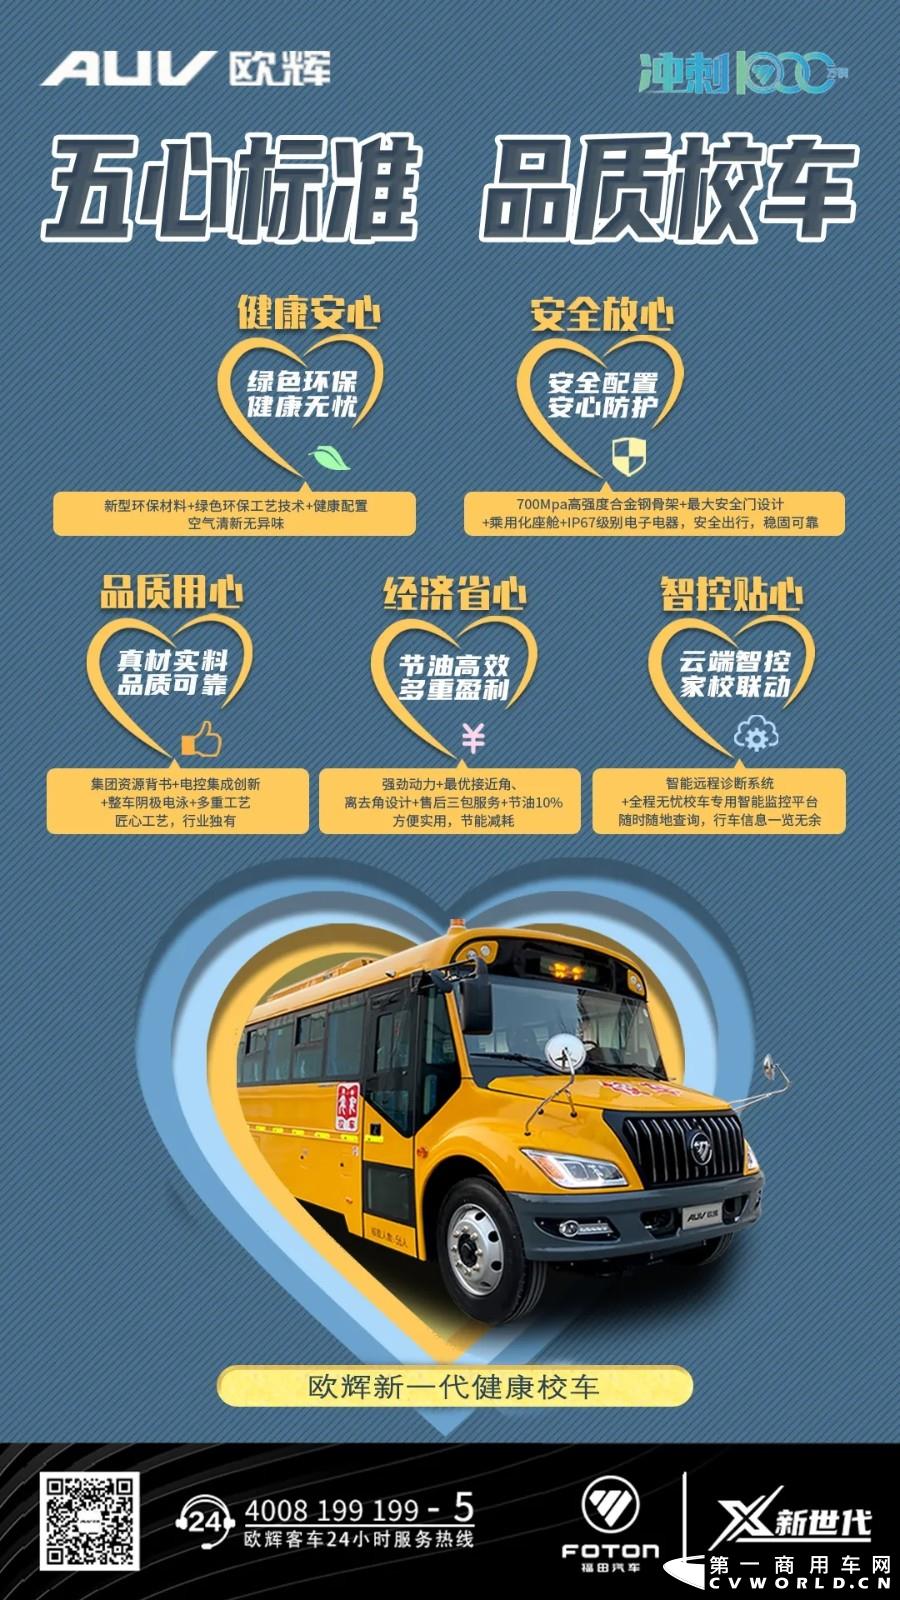 据福田欧辉客车官微消息，福田欧辉全新一代健康校车即将上市。